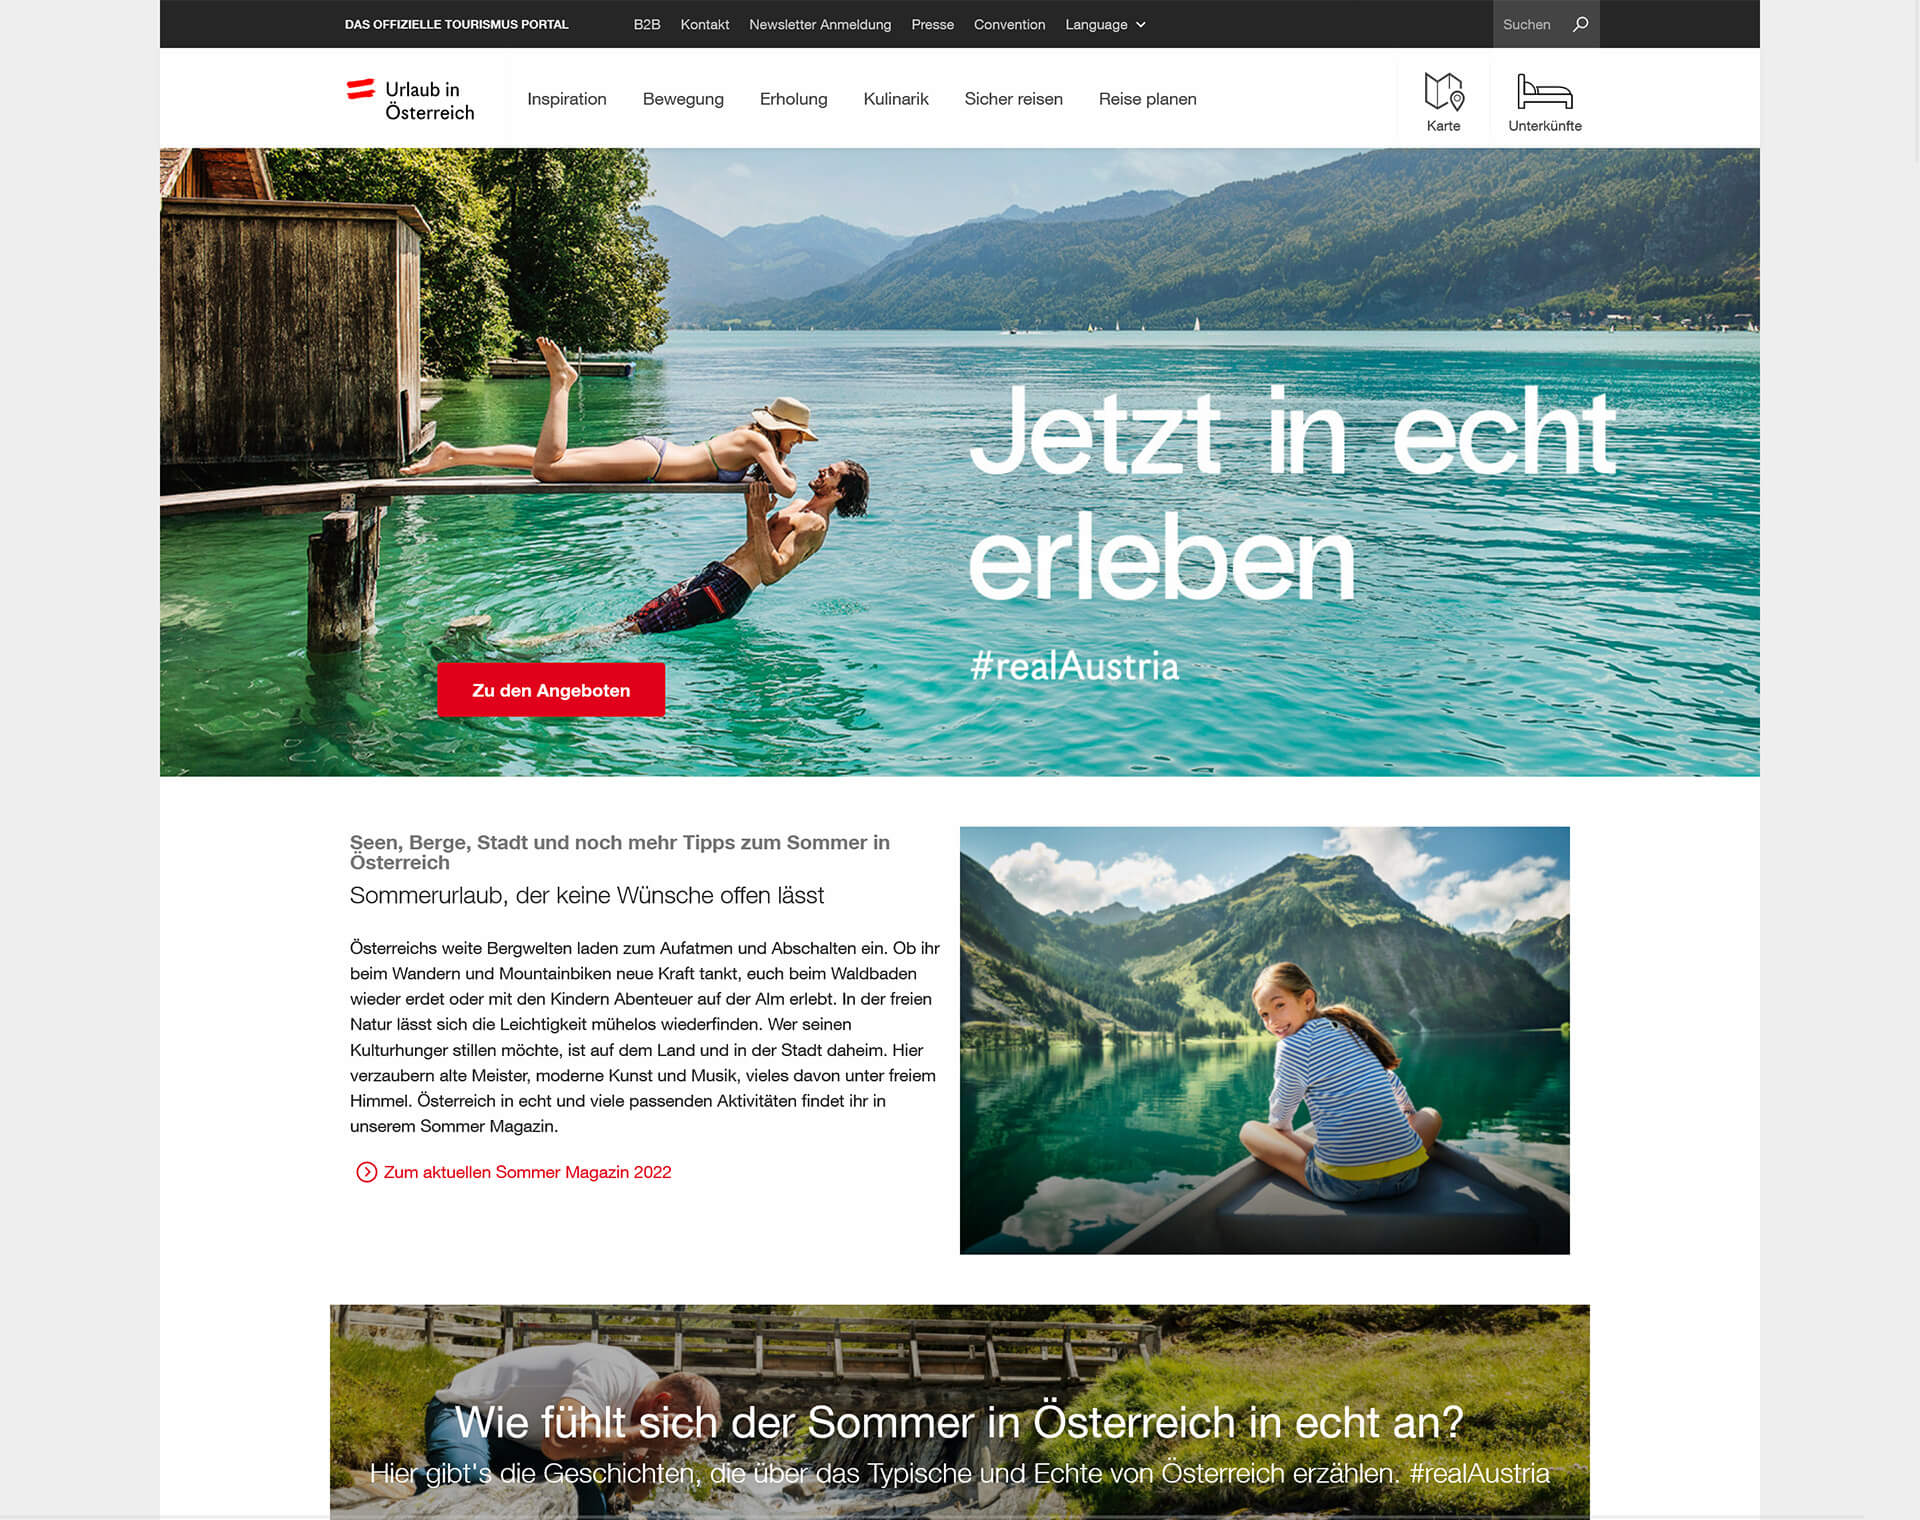 Östereich: Das offizielle Tourismus Portal